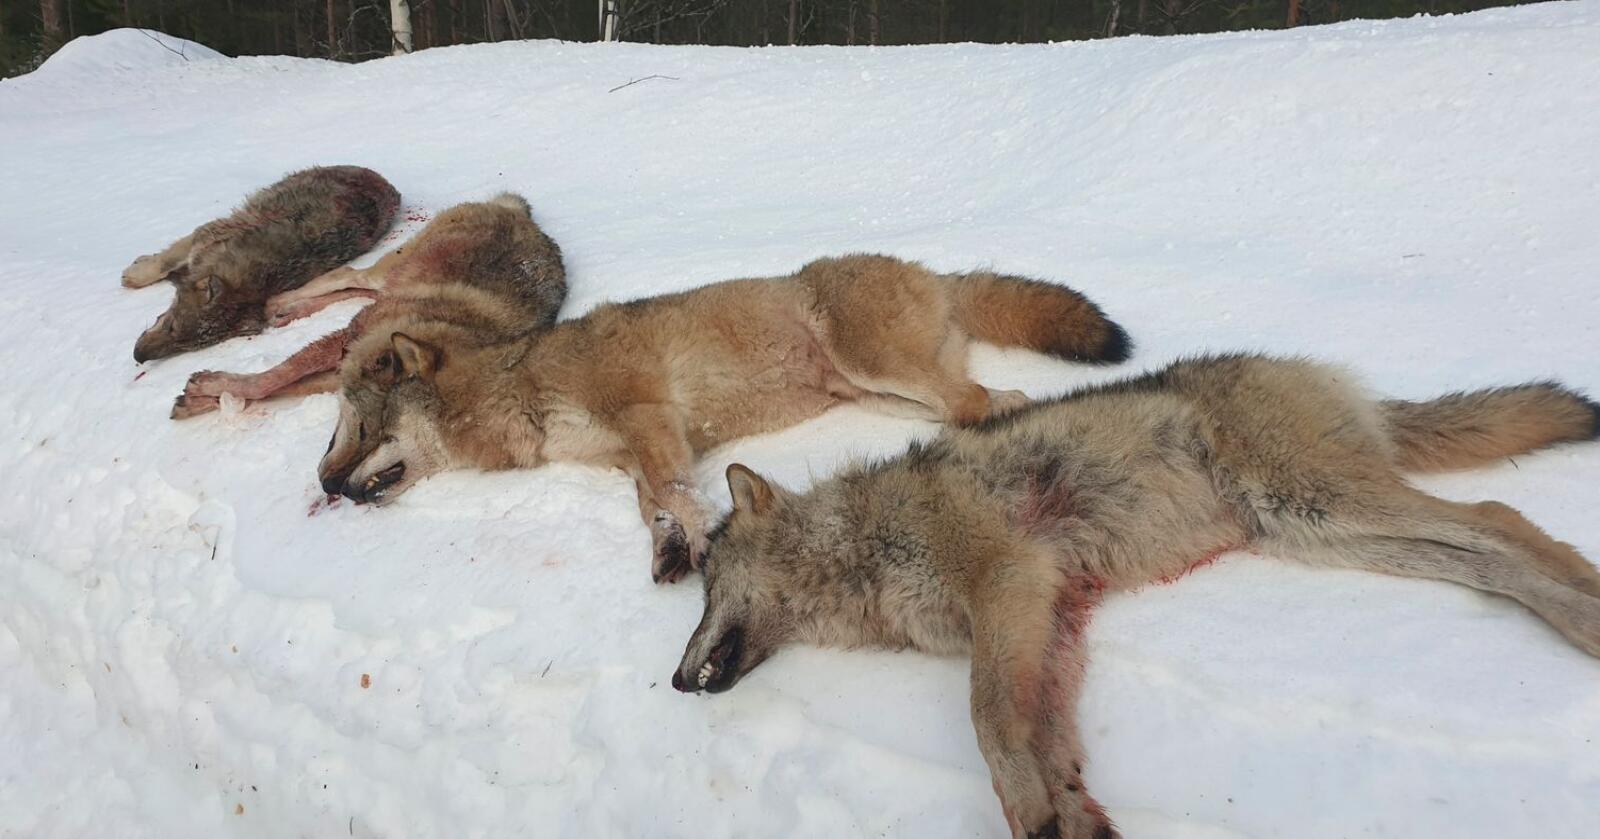 Fire av de seks ulvene i Letjenna-reviret i Elverum ble skutt på første dag av lisensjakten, det var alfaparet og to årsvalper. Foto: Statens Natuoppsyn / NTB